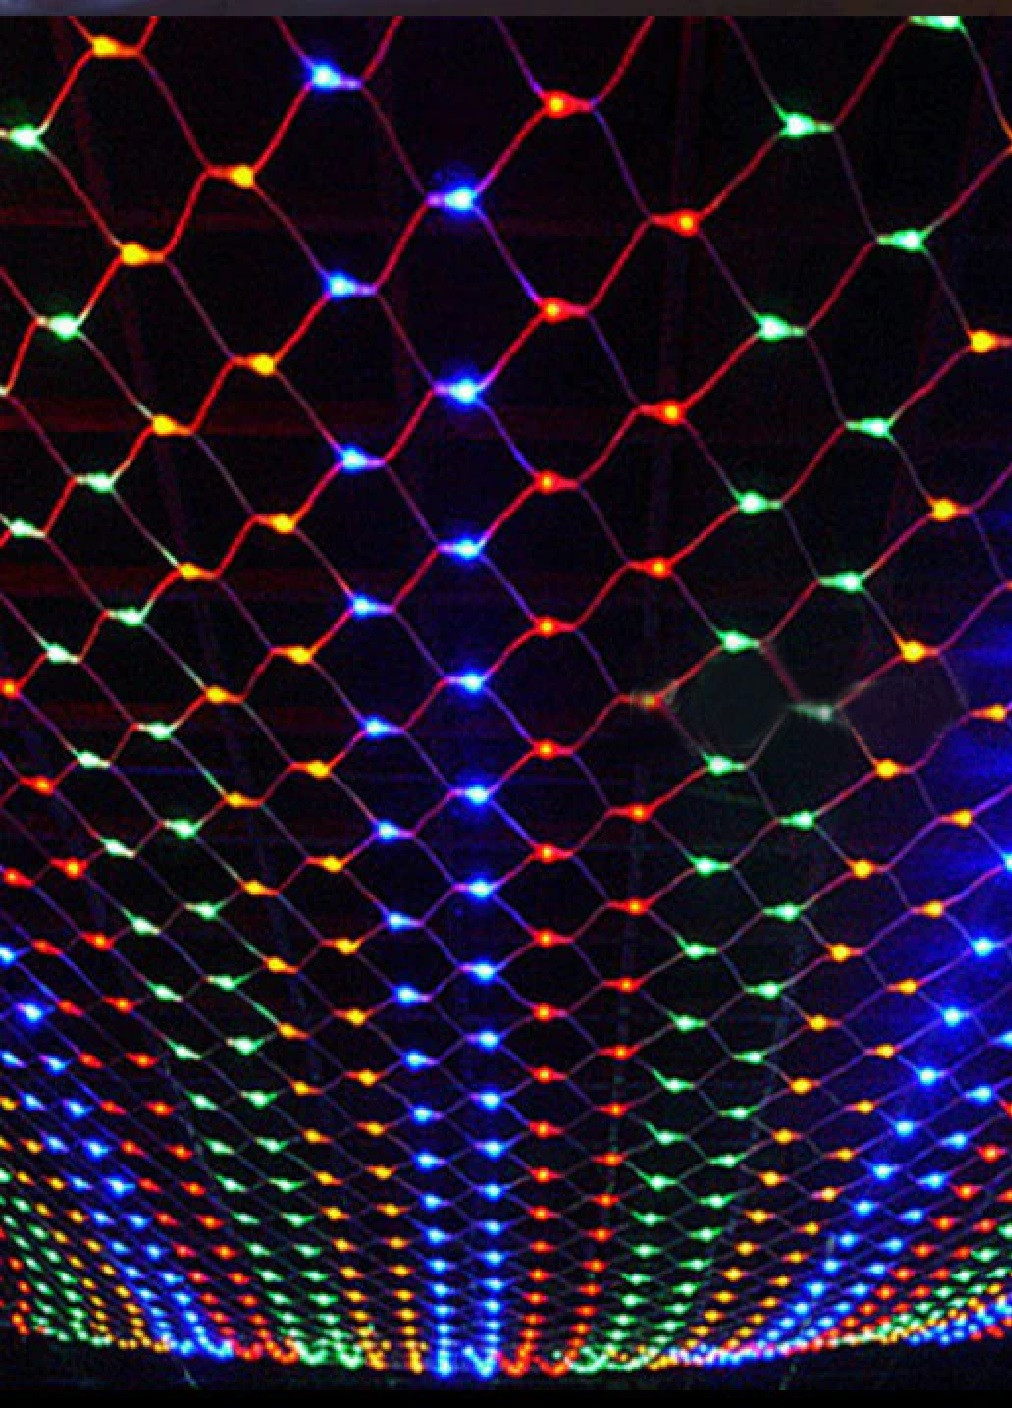 Новогодняя праздничная гирлянда сетка 240 Led прозрачный провод 3х0,8 м (473556-Prob) Разноцветная Unbranded (255273312)